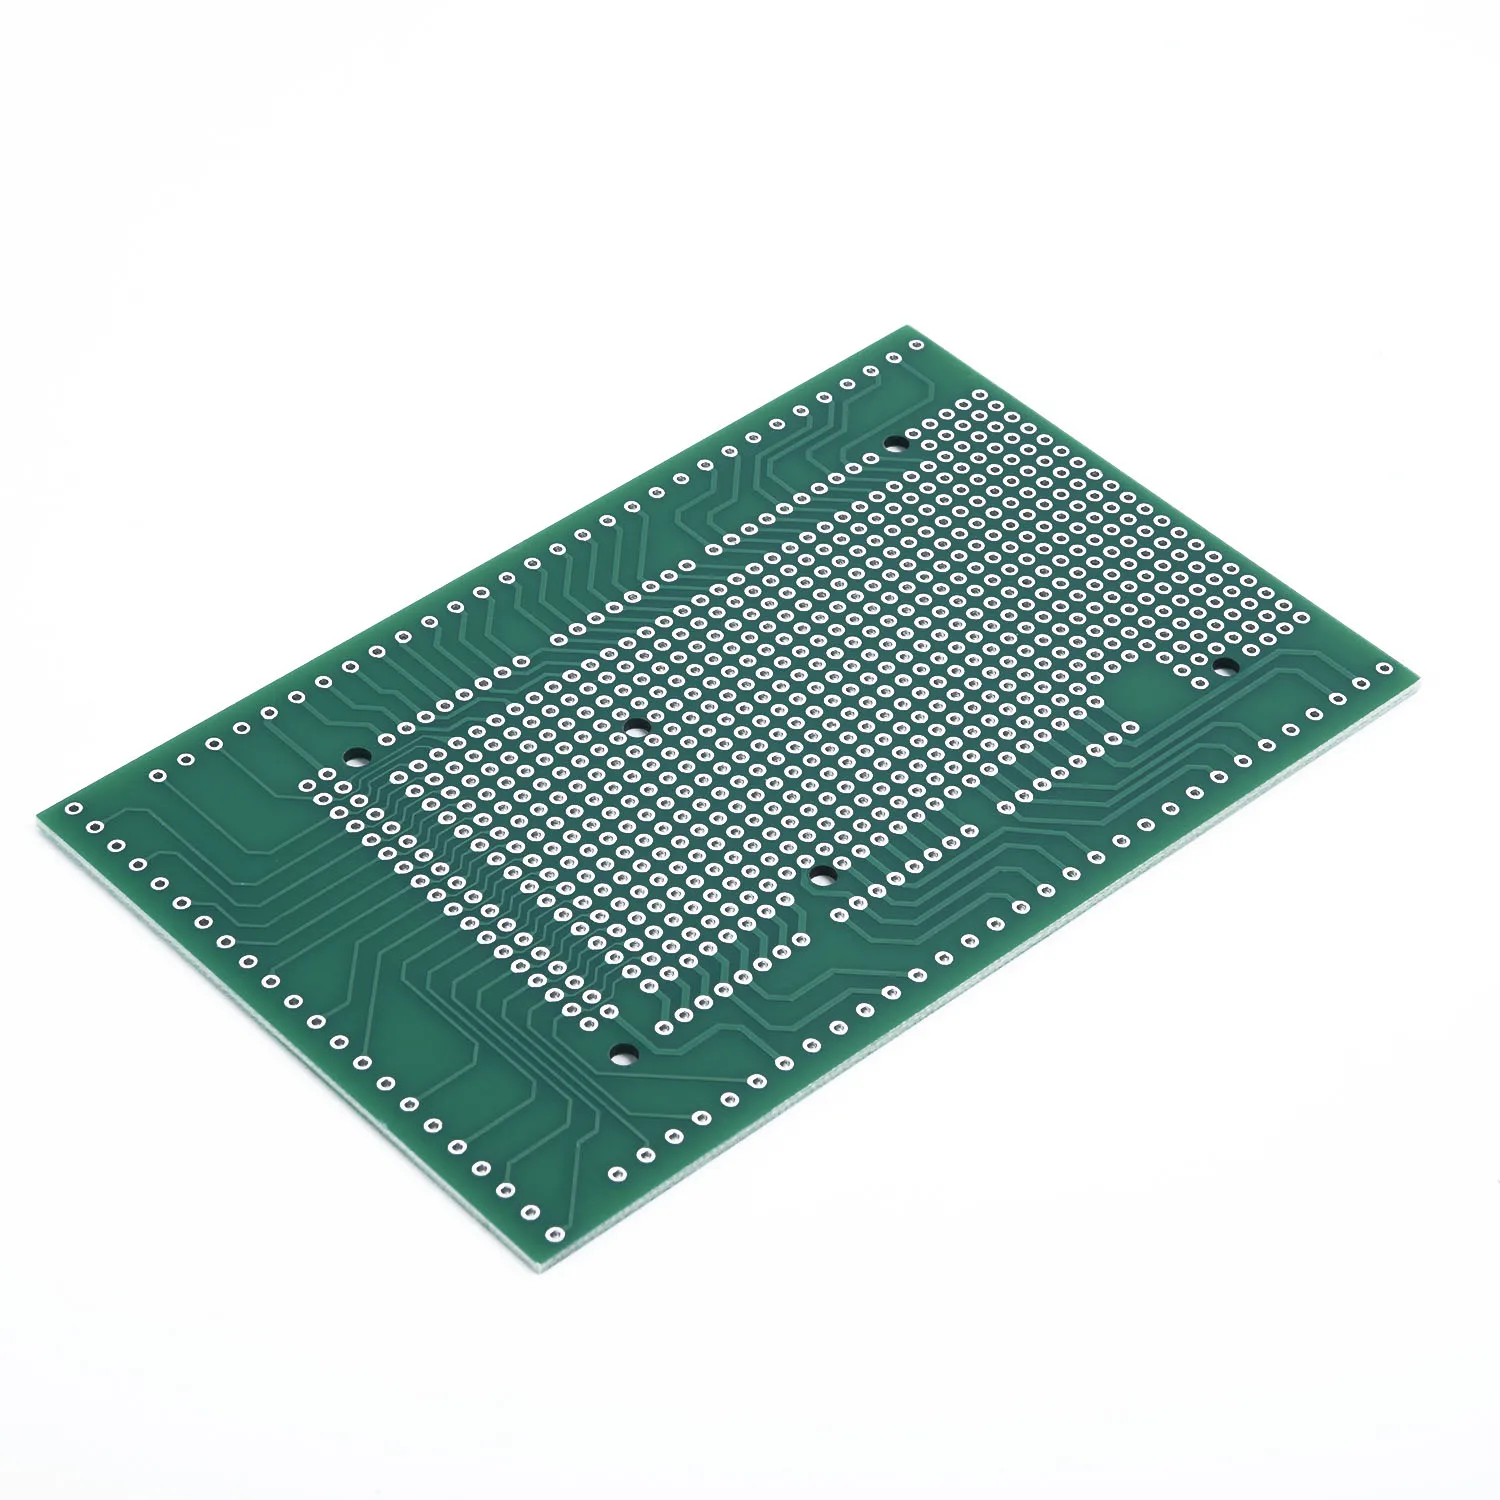 MEGA-2560 R31 PCB прототип винт клеммный блок Щит Плата комплект для Arduino AU MEGA-2560 R31 прототип винт